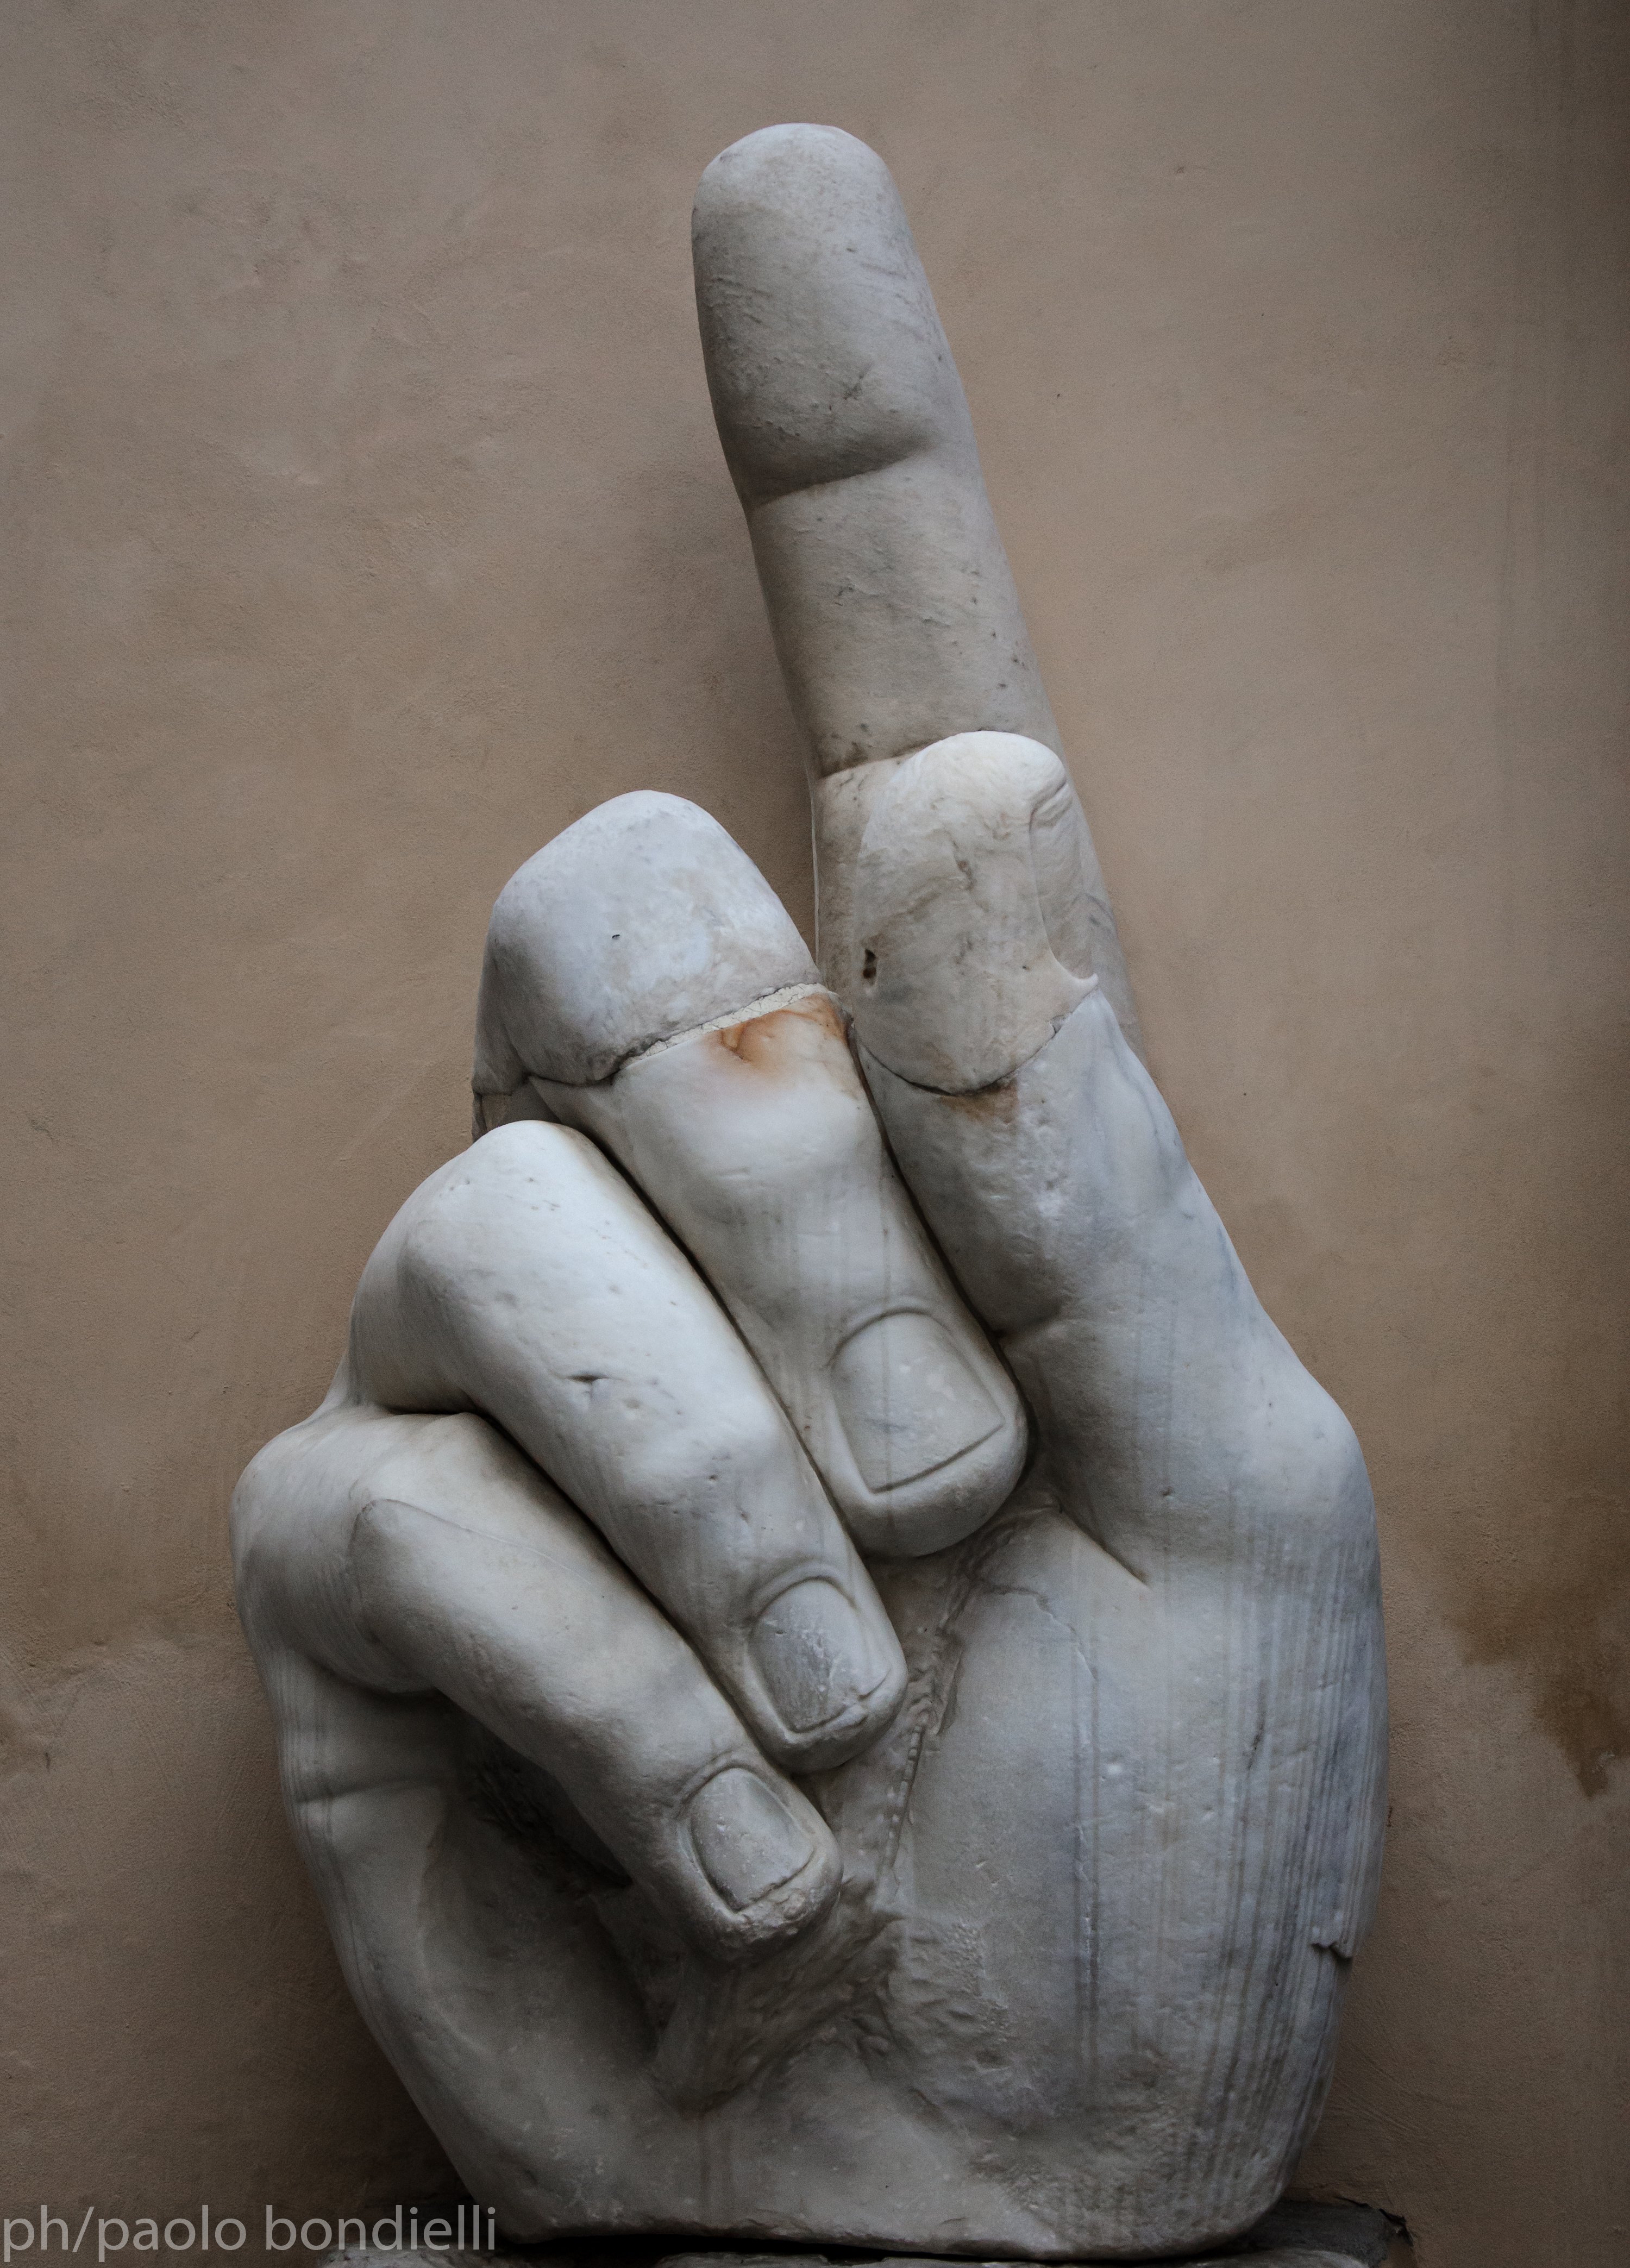 ph/Paolo Bondielli - La mano colossale